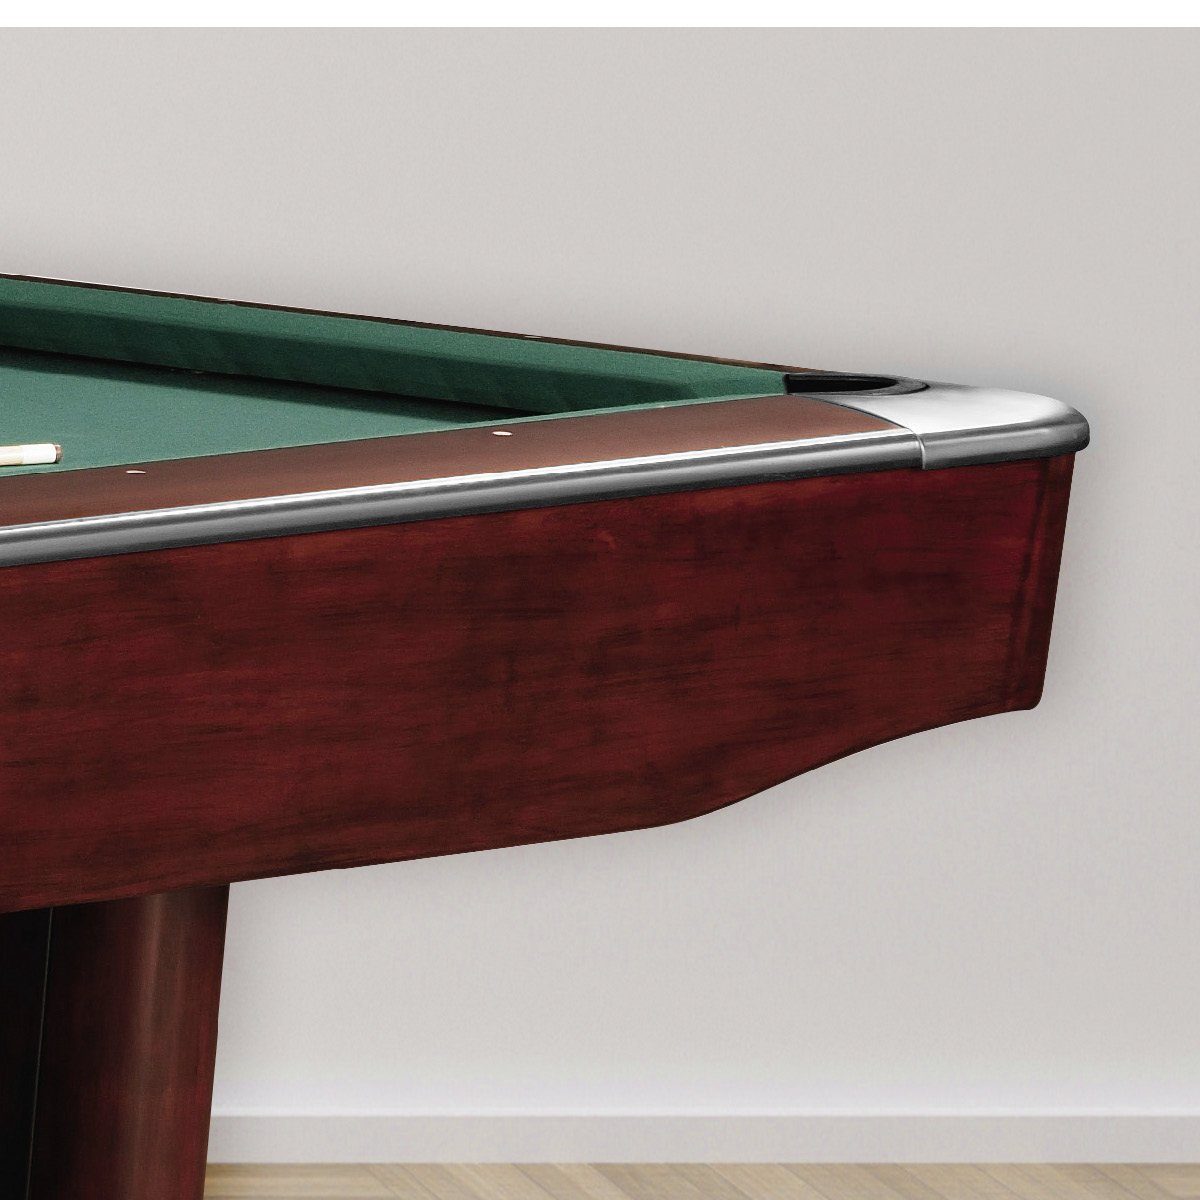 Billiard-Royal Billardtisch Spielfläche aus beliebter 8ft. Mahagoni, 3-teiliger Naturschieferplatte Billiard-Royal® Qualität), Gladiator massive Ausführung in (Hochwertige und